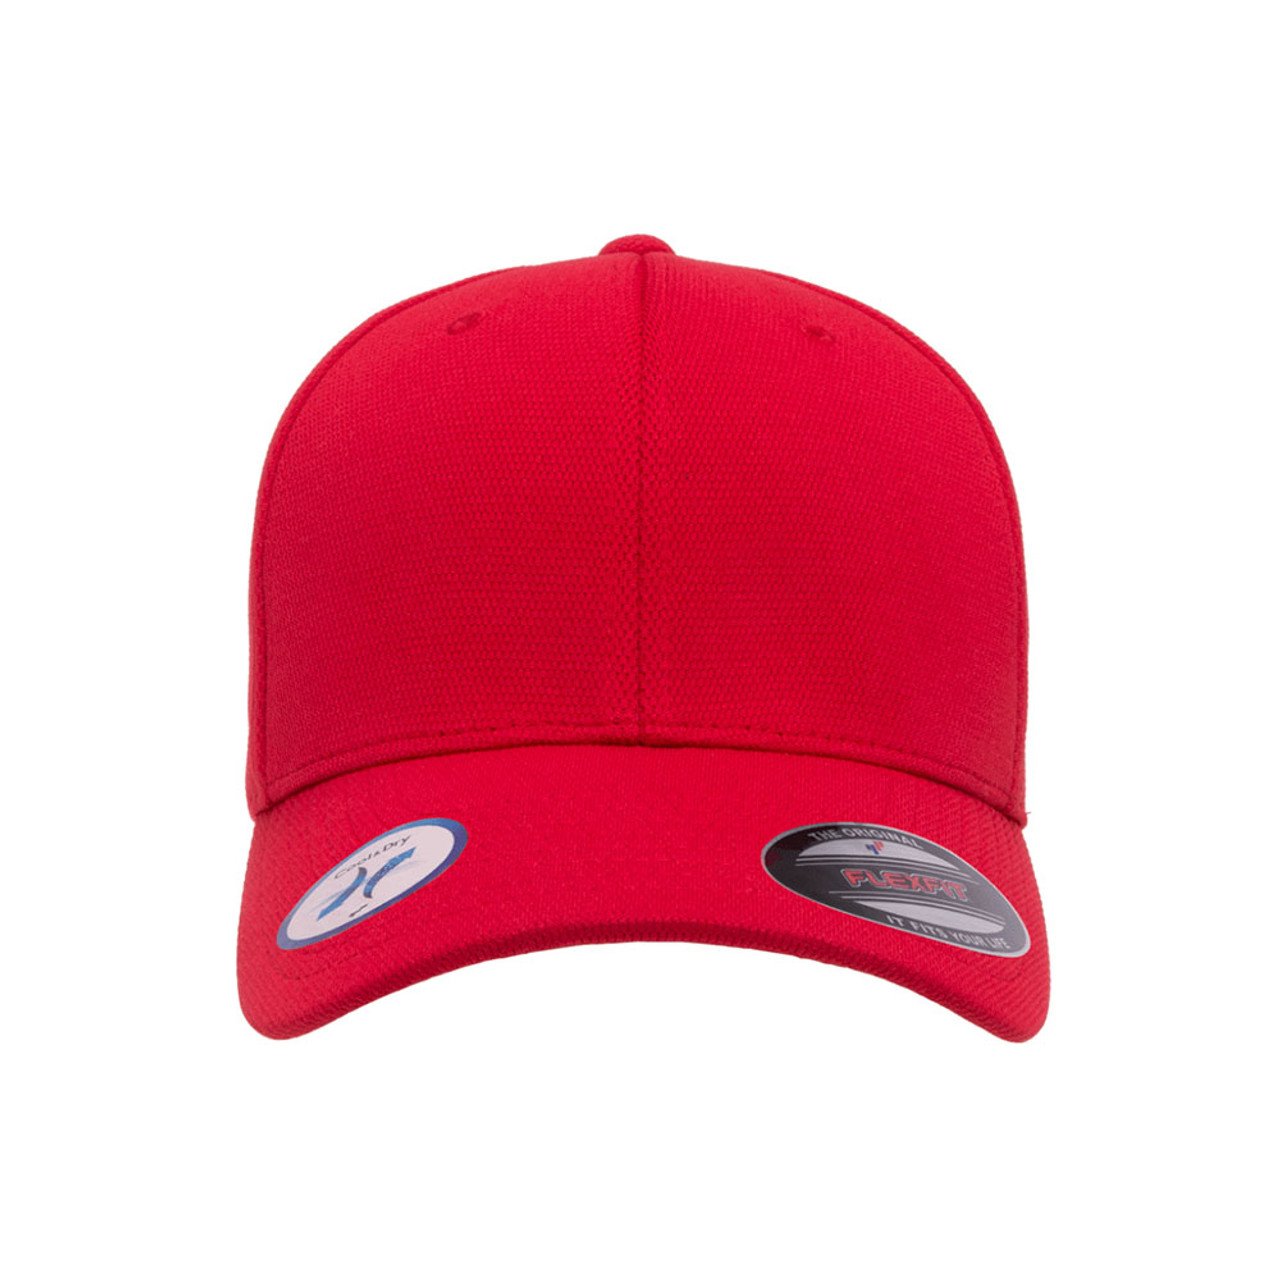 Performance Flexfit One Cap & Cool Dozen | - Hat The Jac Dry